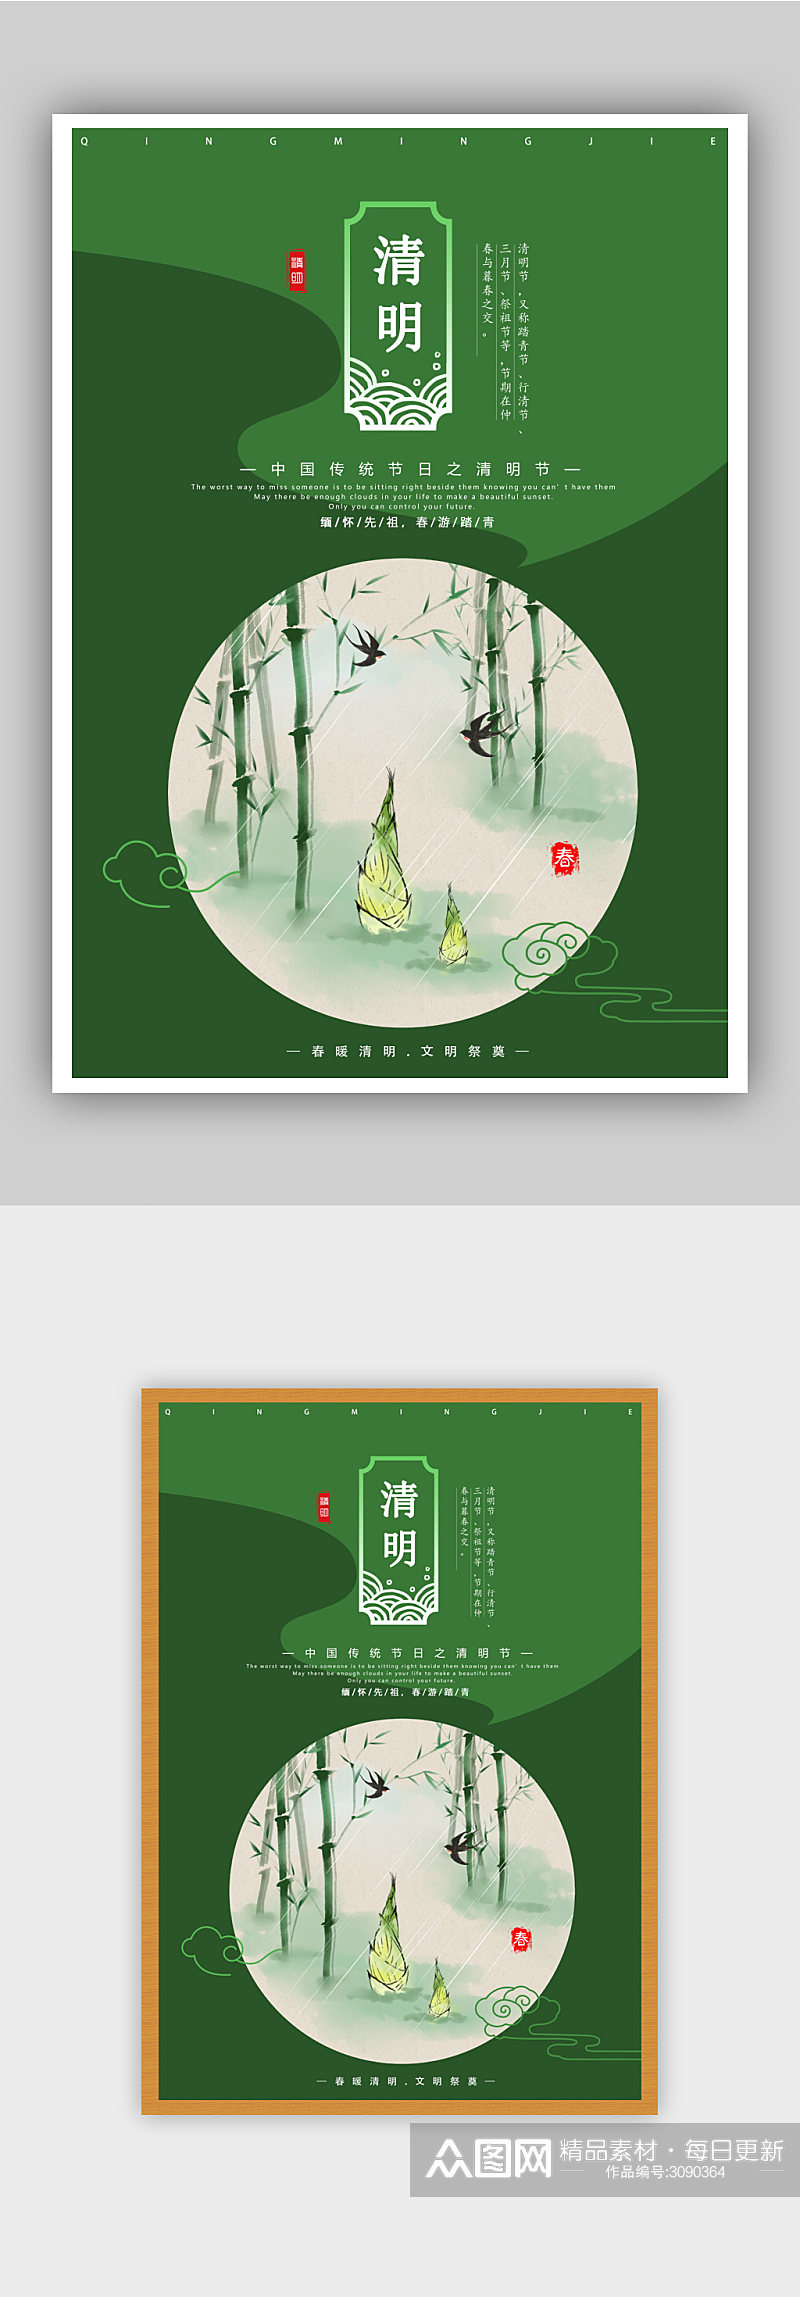 中国风传统节气清明节海报设计素材